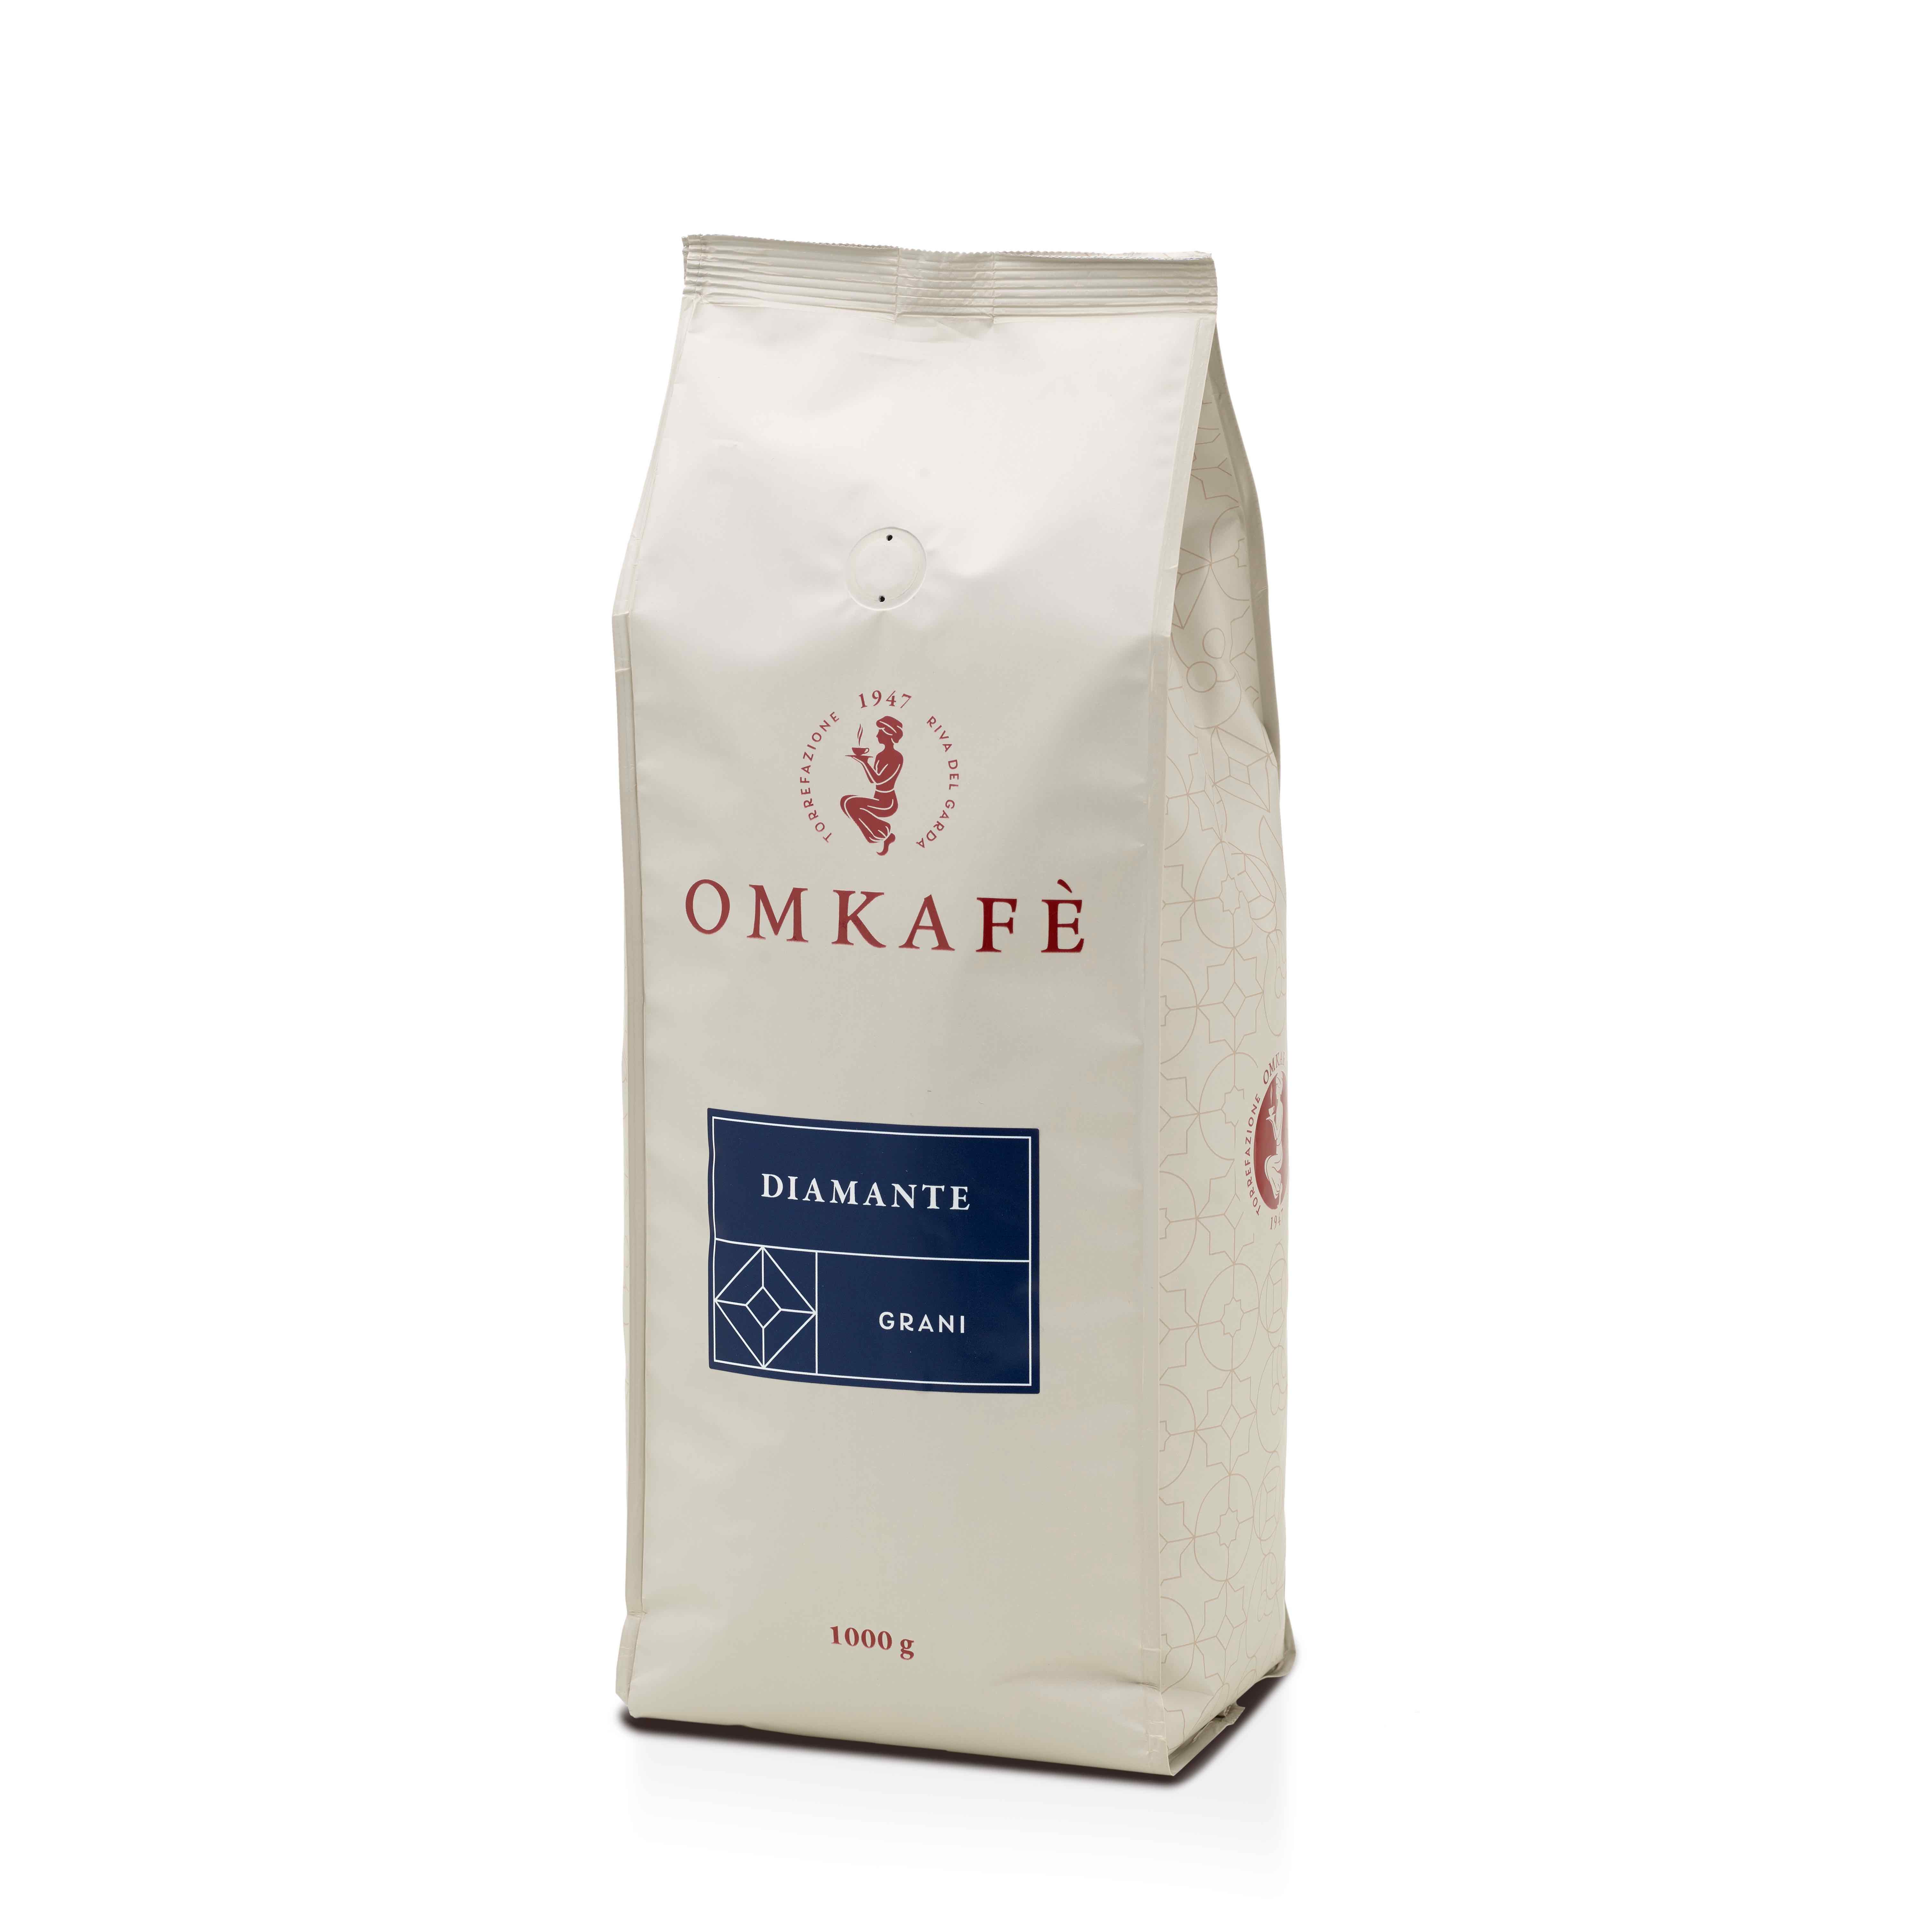 Omkafè Diamante Espresso 1kg Bohnen